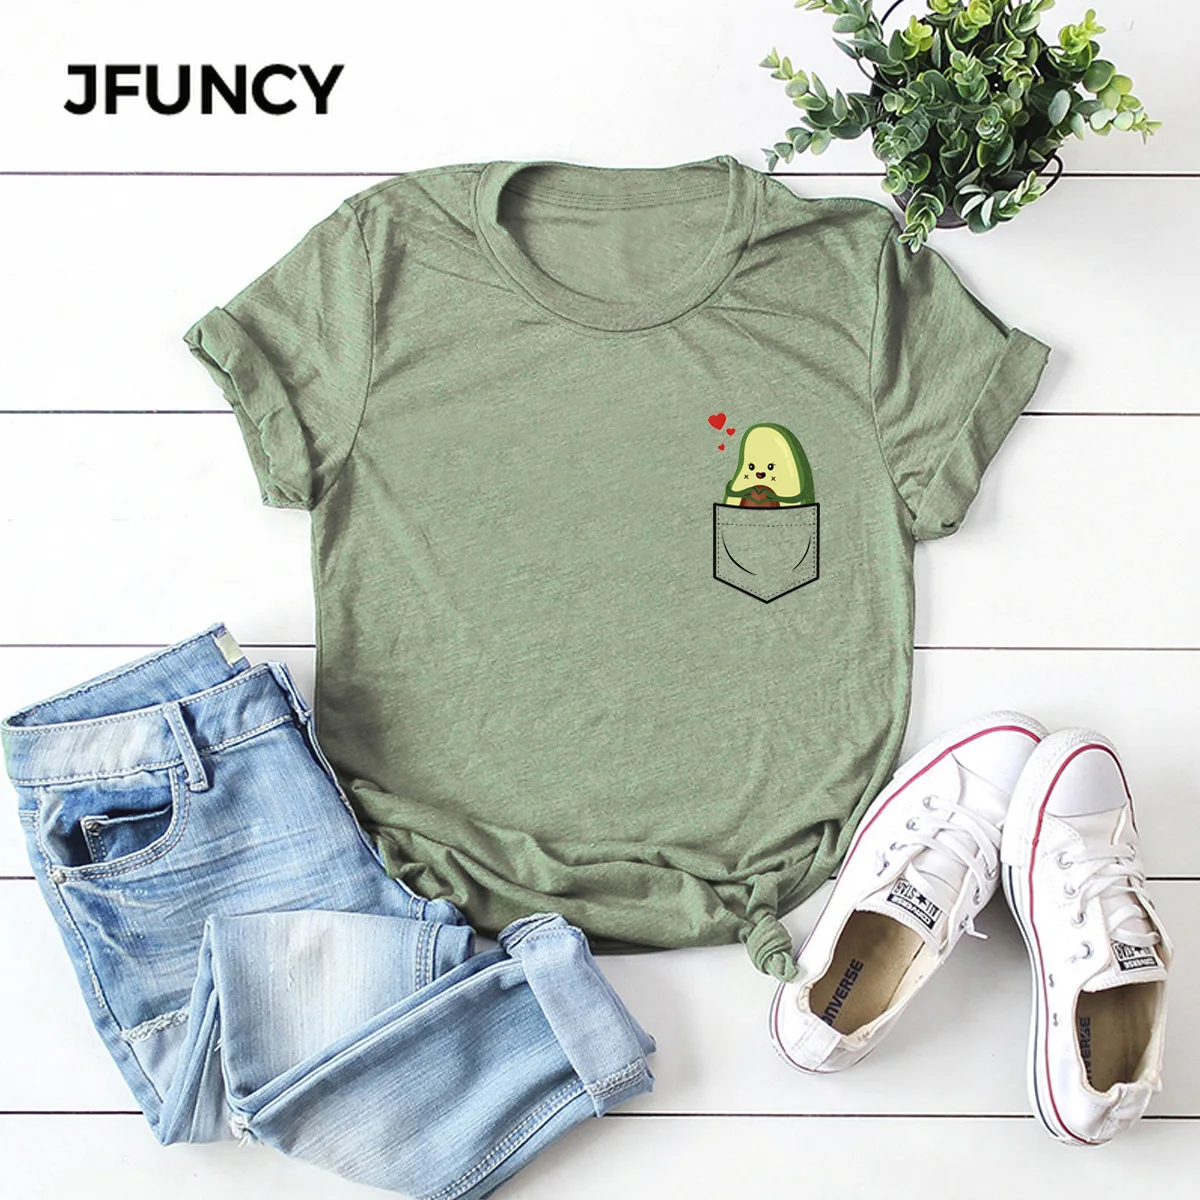 JFUNCY Fun Cartoon Pocket Print Loose T Shirt Oversize Women Tees Tops Summer Cotton T-Shirt Woman Shirts Fashion Casual Tshirt